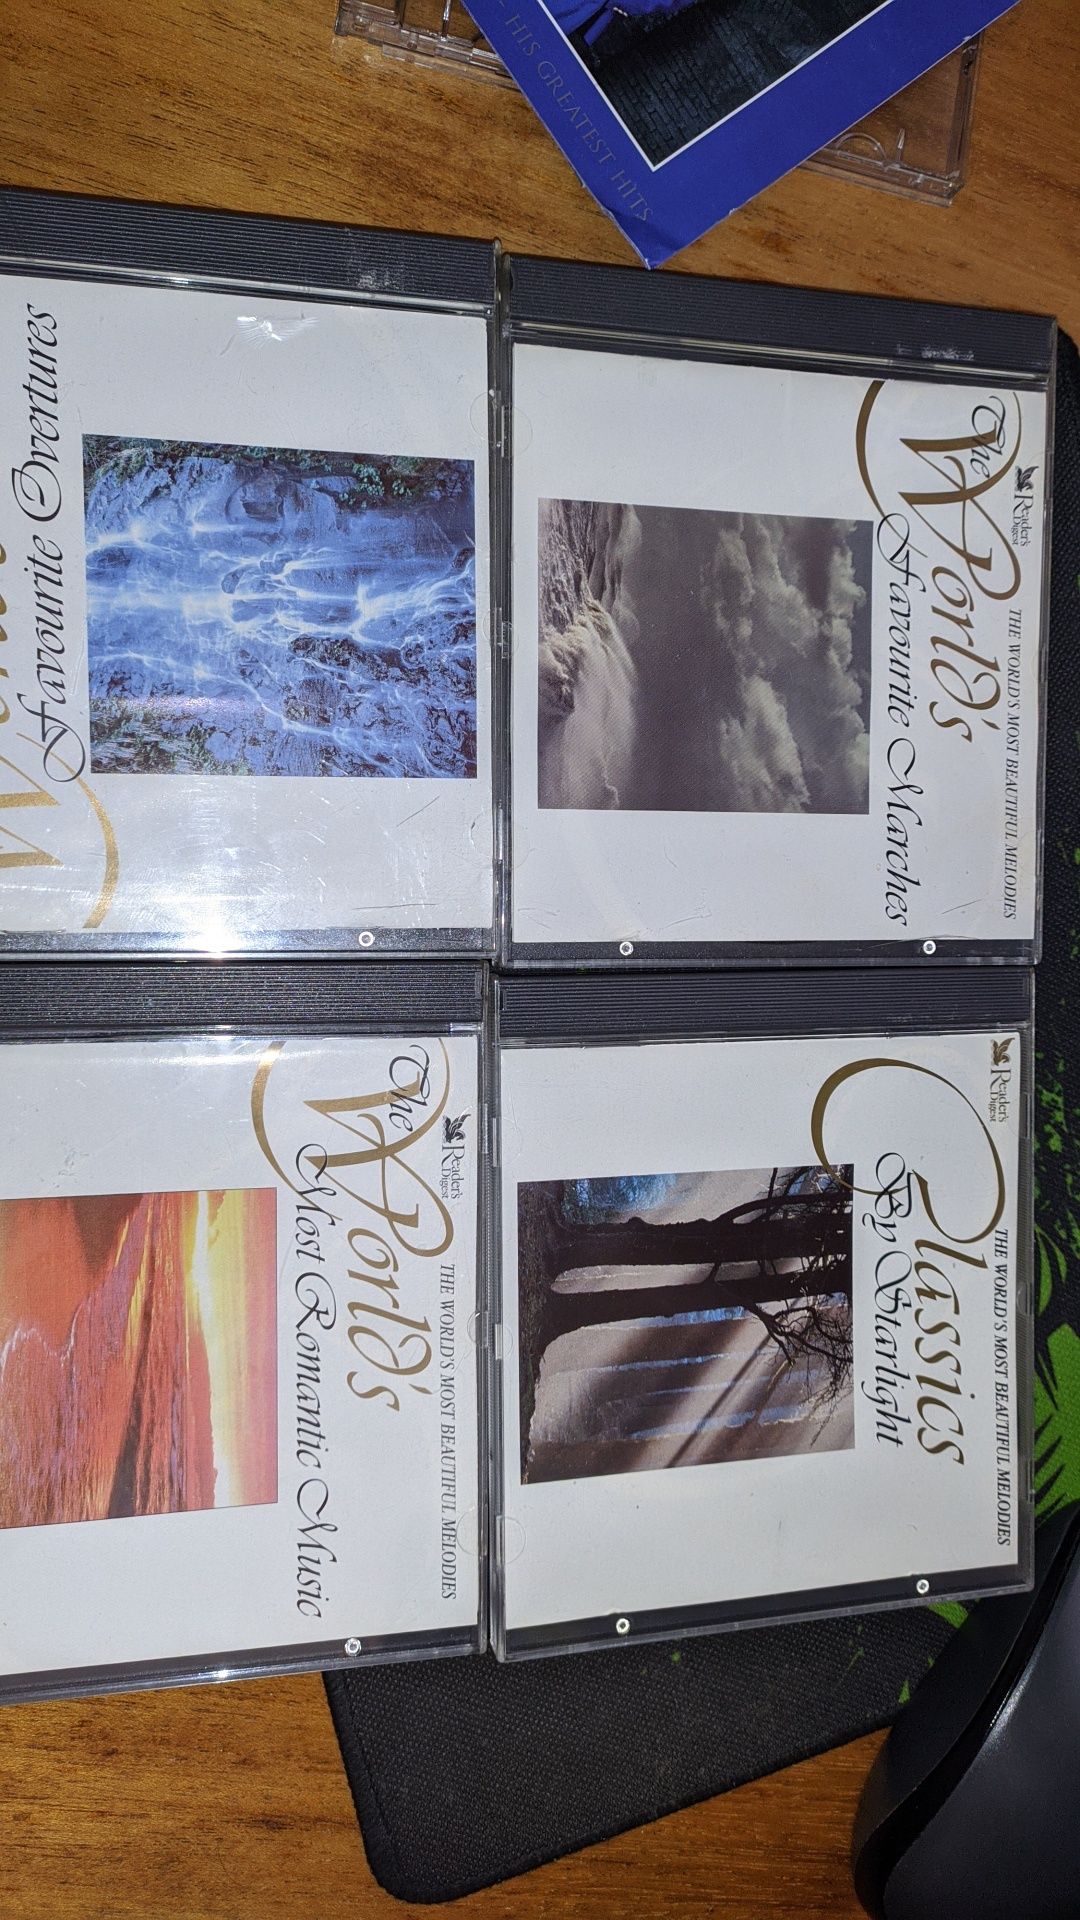 Фірмові збірки audio cd, класика, романттка, марші, інструментал